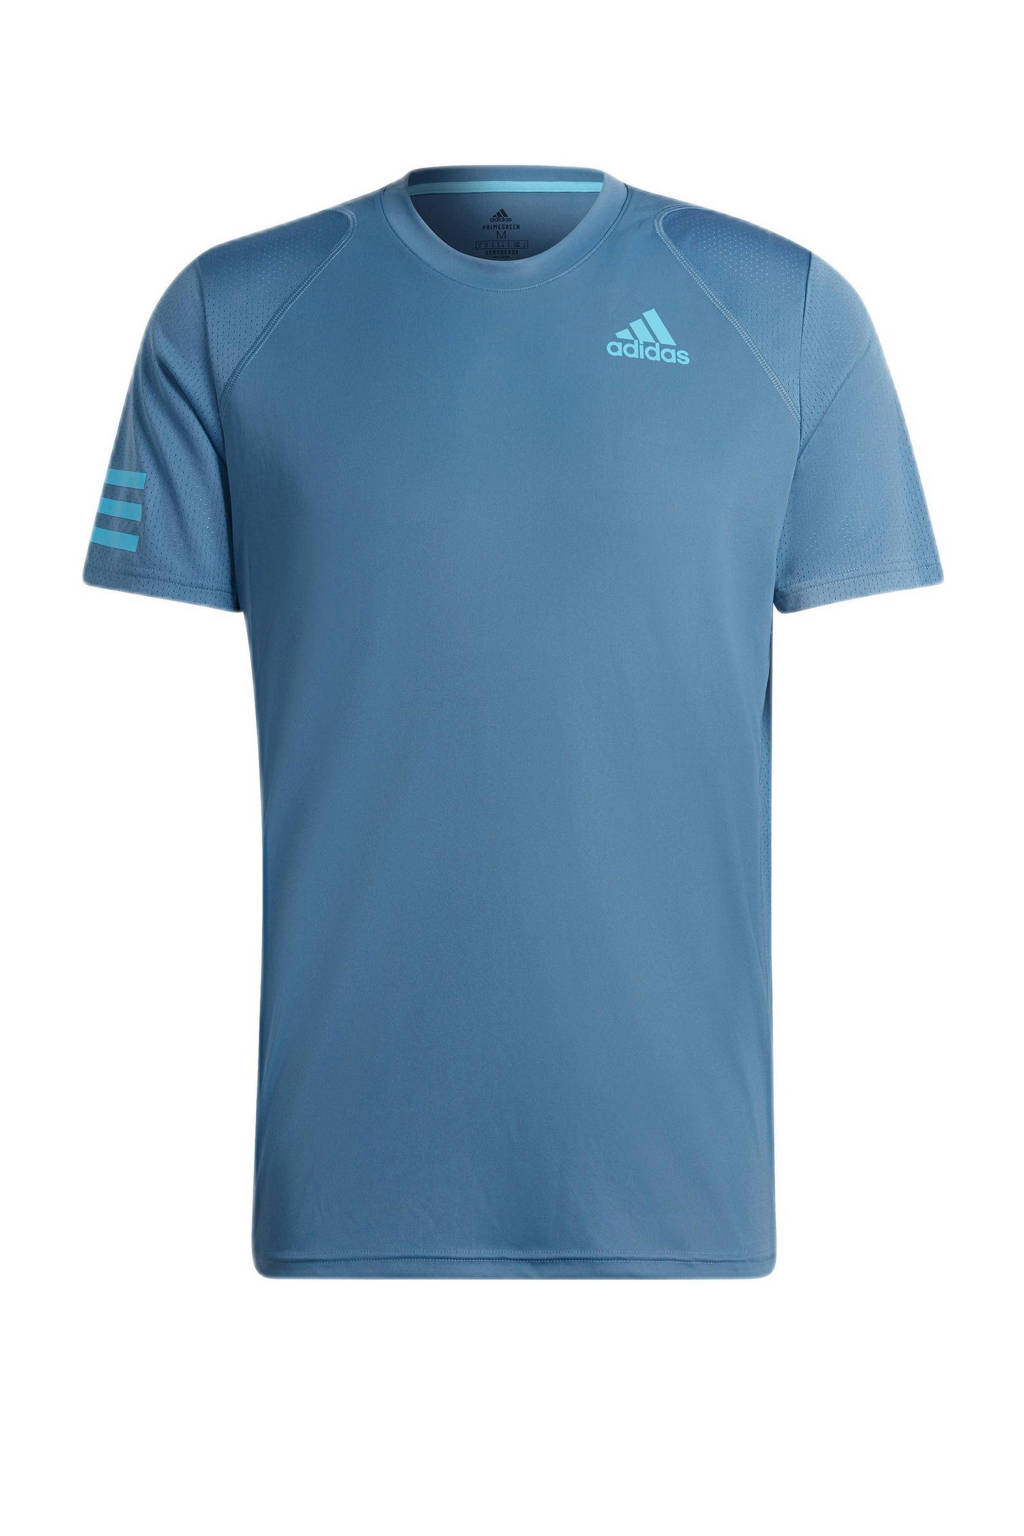 adidas Performance   sport T-shirt blauw/lichtblauw